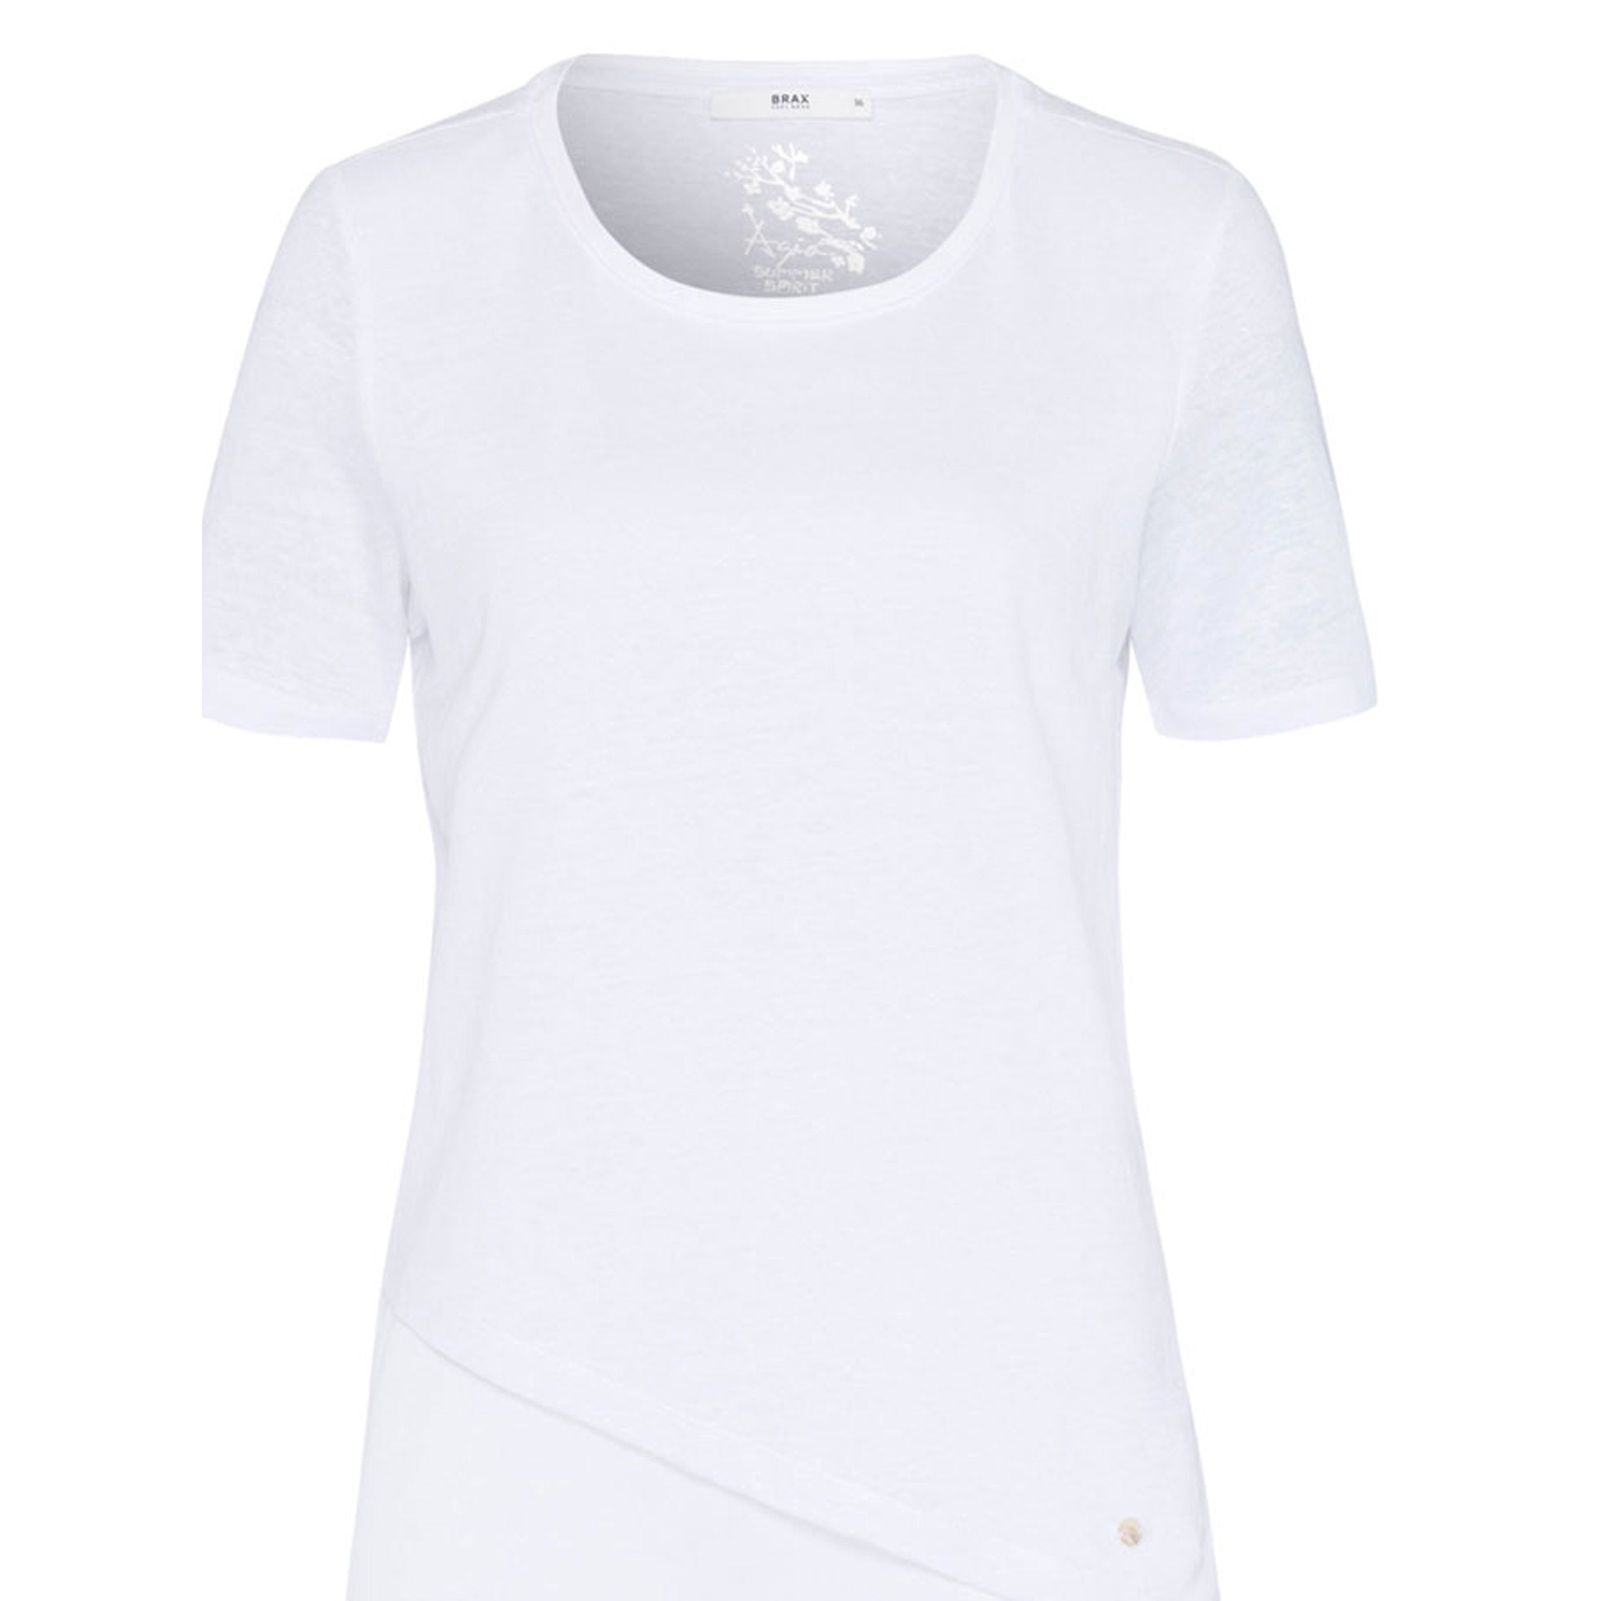 تی شرت یقه گرد زنانه CORA - برکس - سفيد - 2